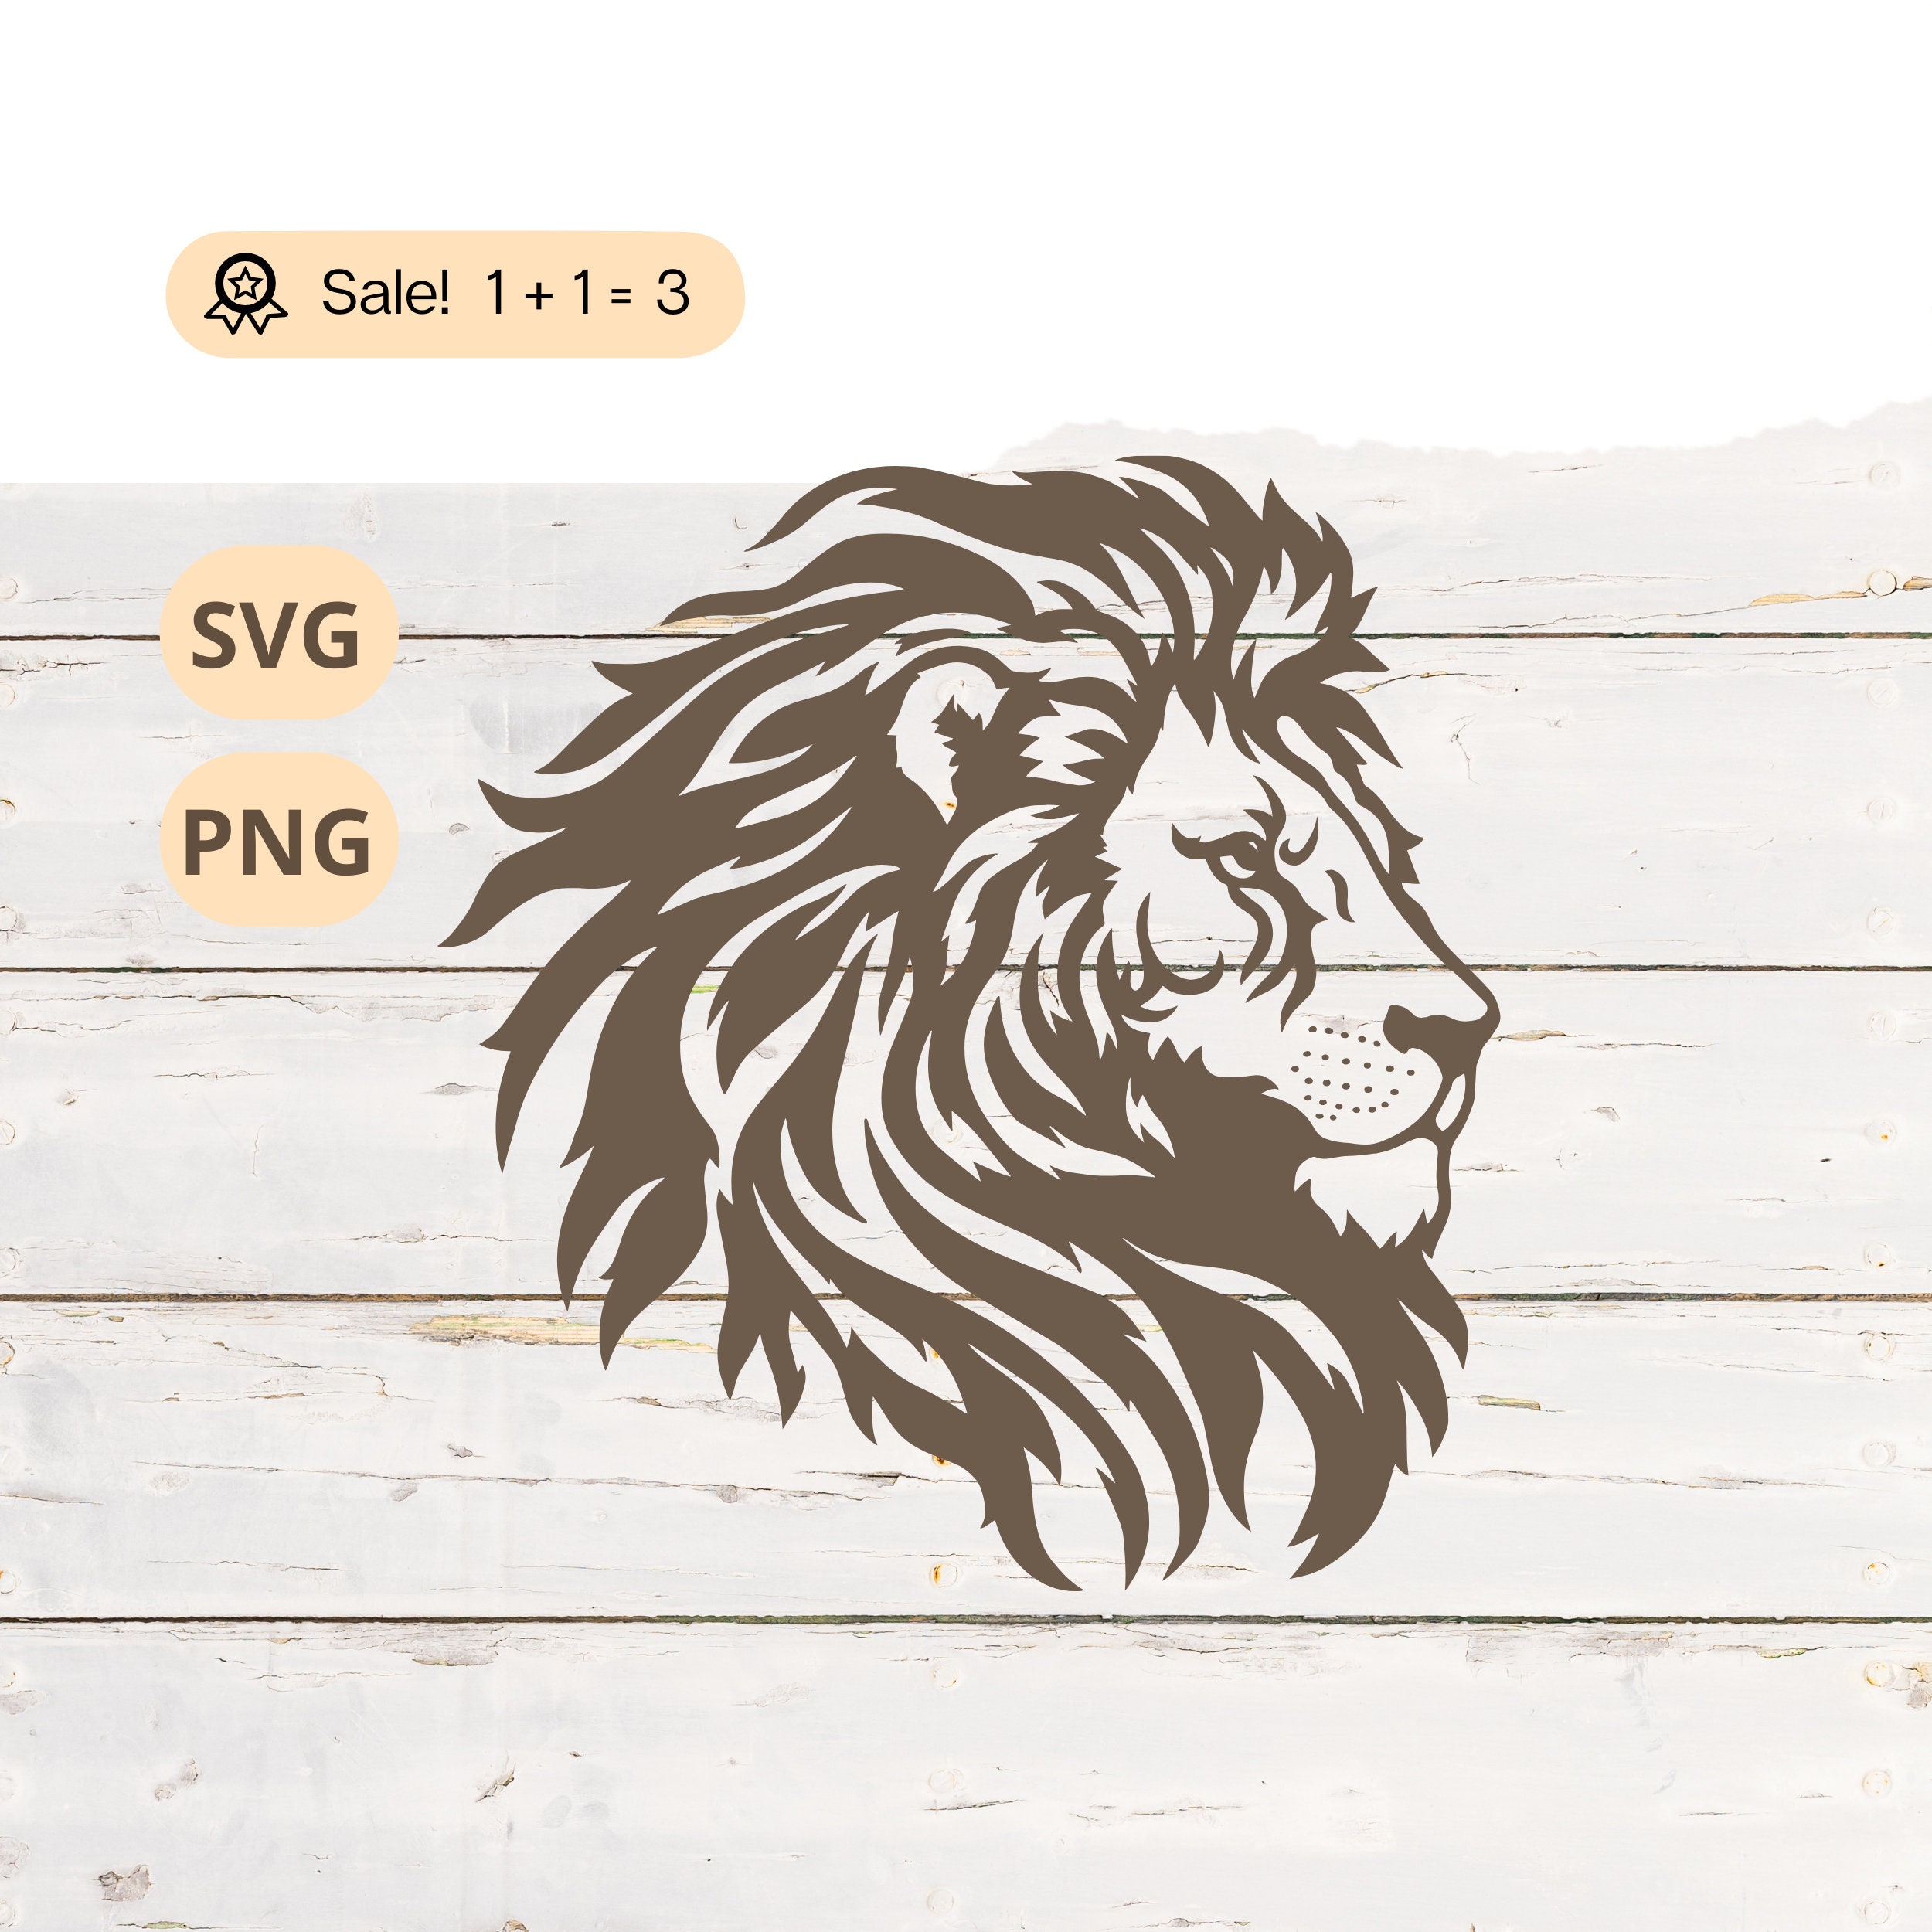 Lion Tattoo Stencil, Lion SVG Graphic by tattooworker · Creative